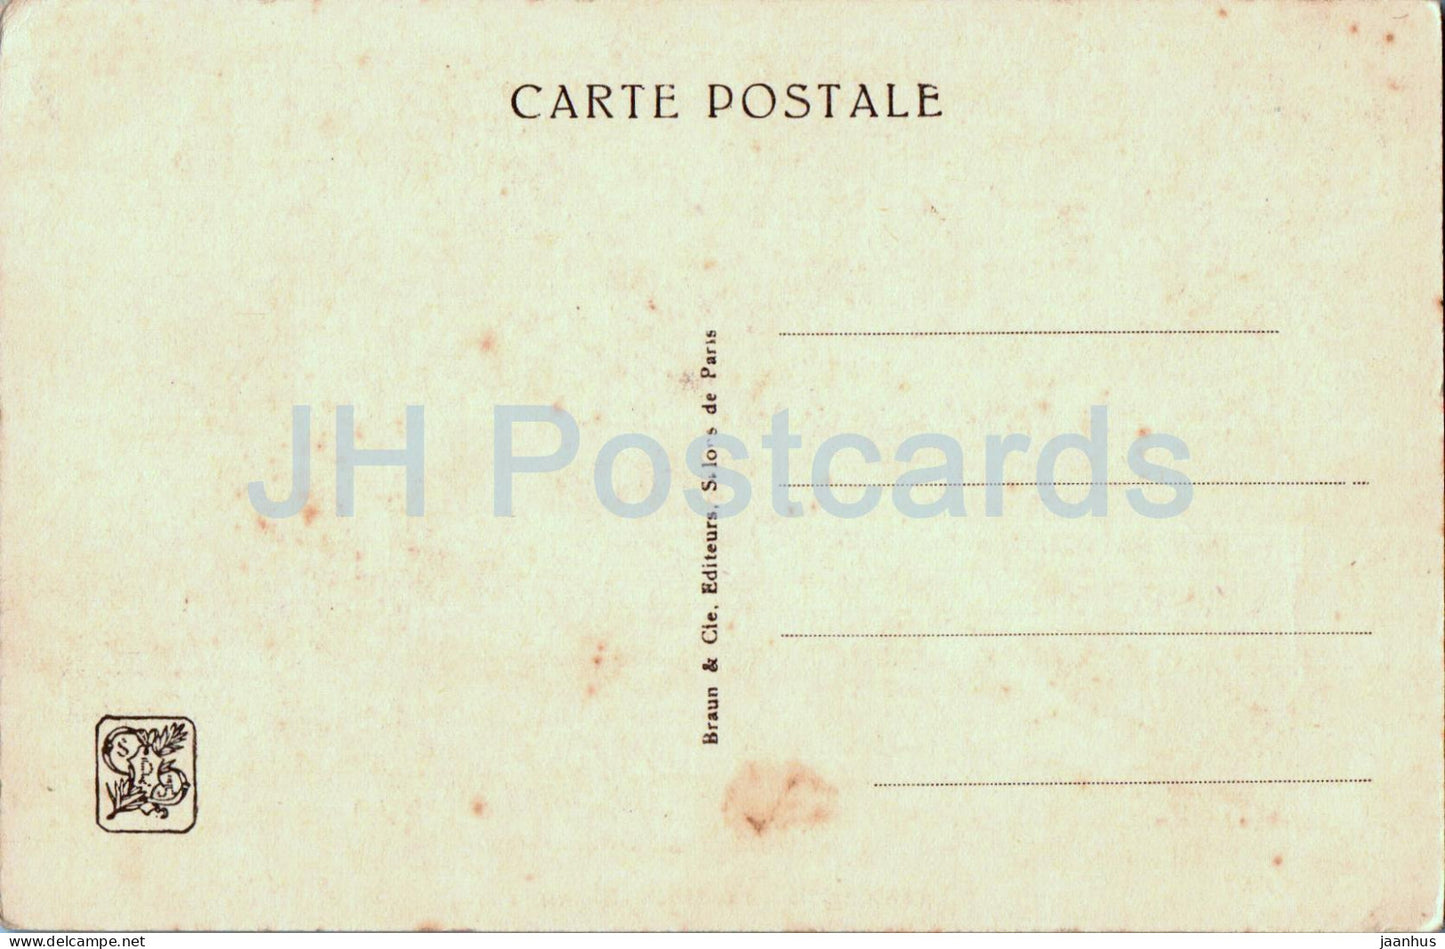 Gemälde von Alfred Marzin – Pardon Gris a Penmarch – Finistere – Französische Kunst – 0922 – alte Postkarte – Frankreich – unbenutzt 